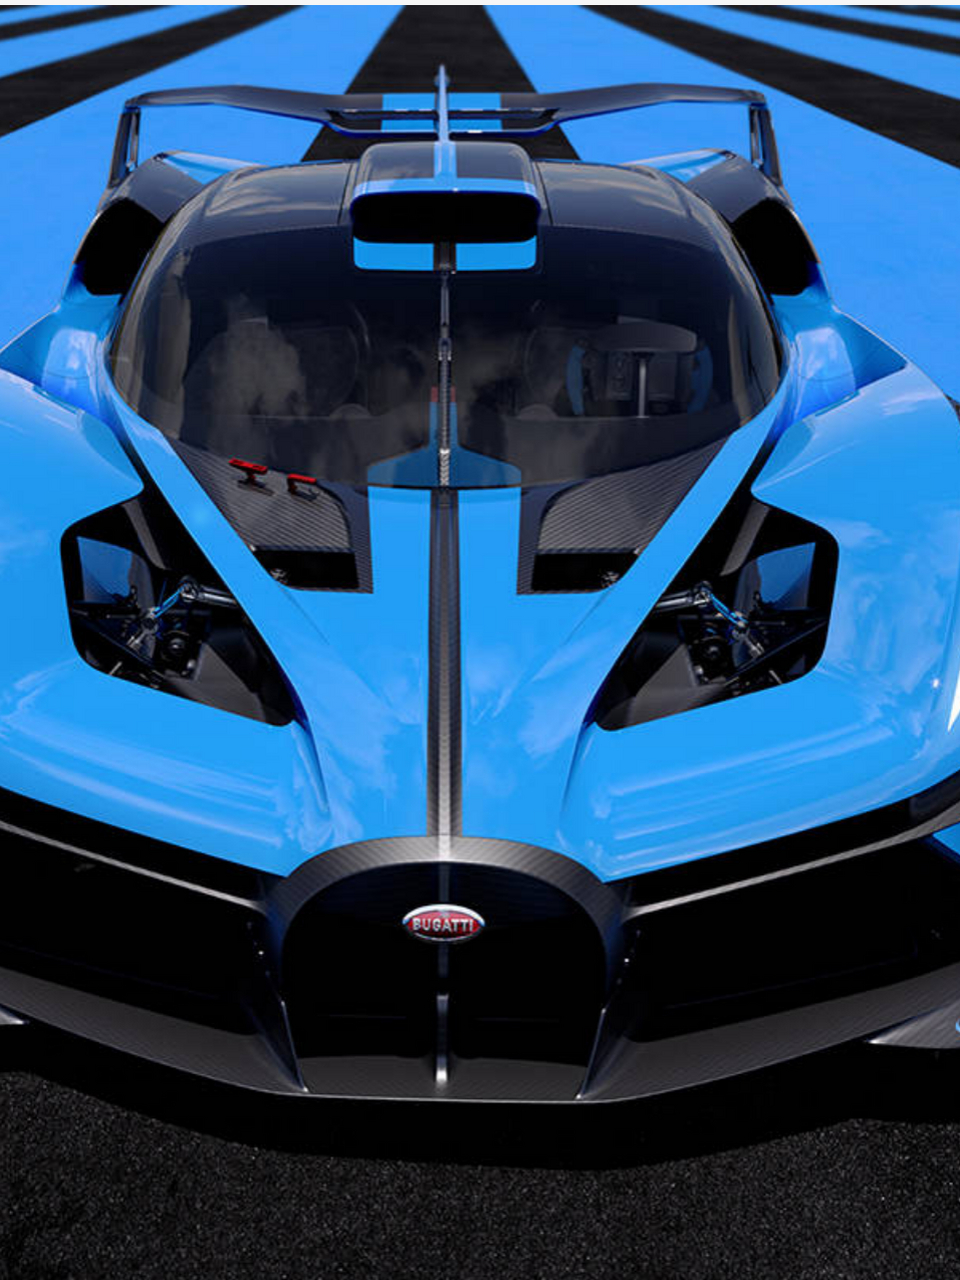 1,bugatti bolide bugatti bolide是一款超级跑车,拥有出色的性能和